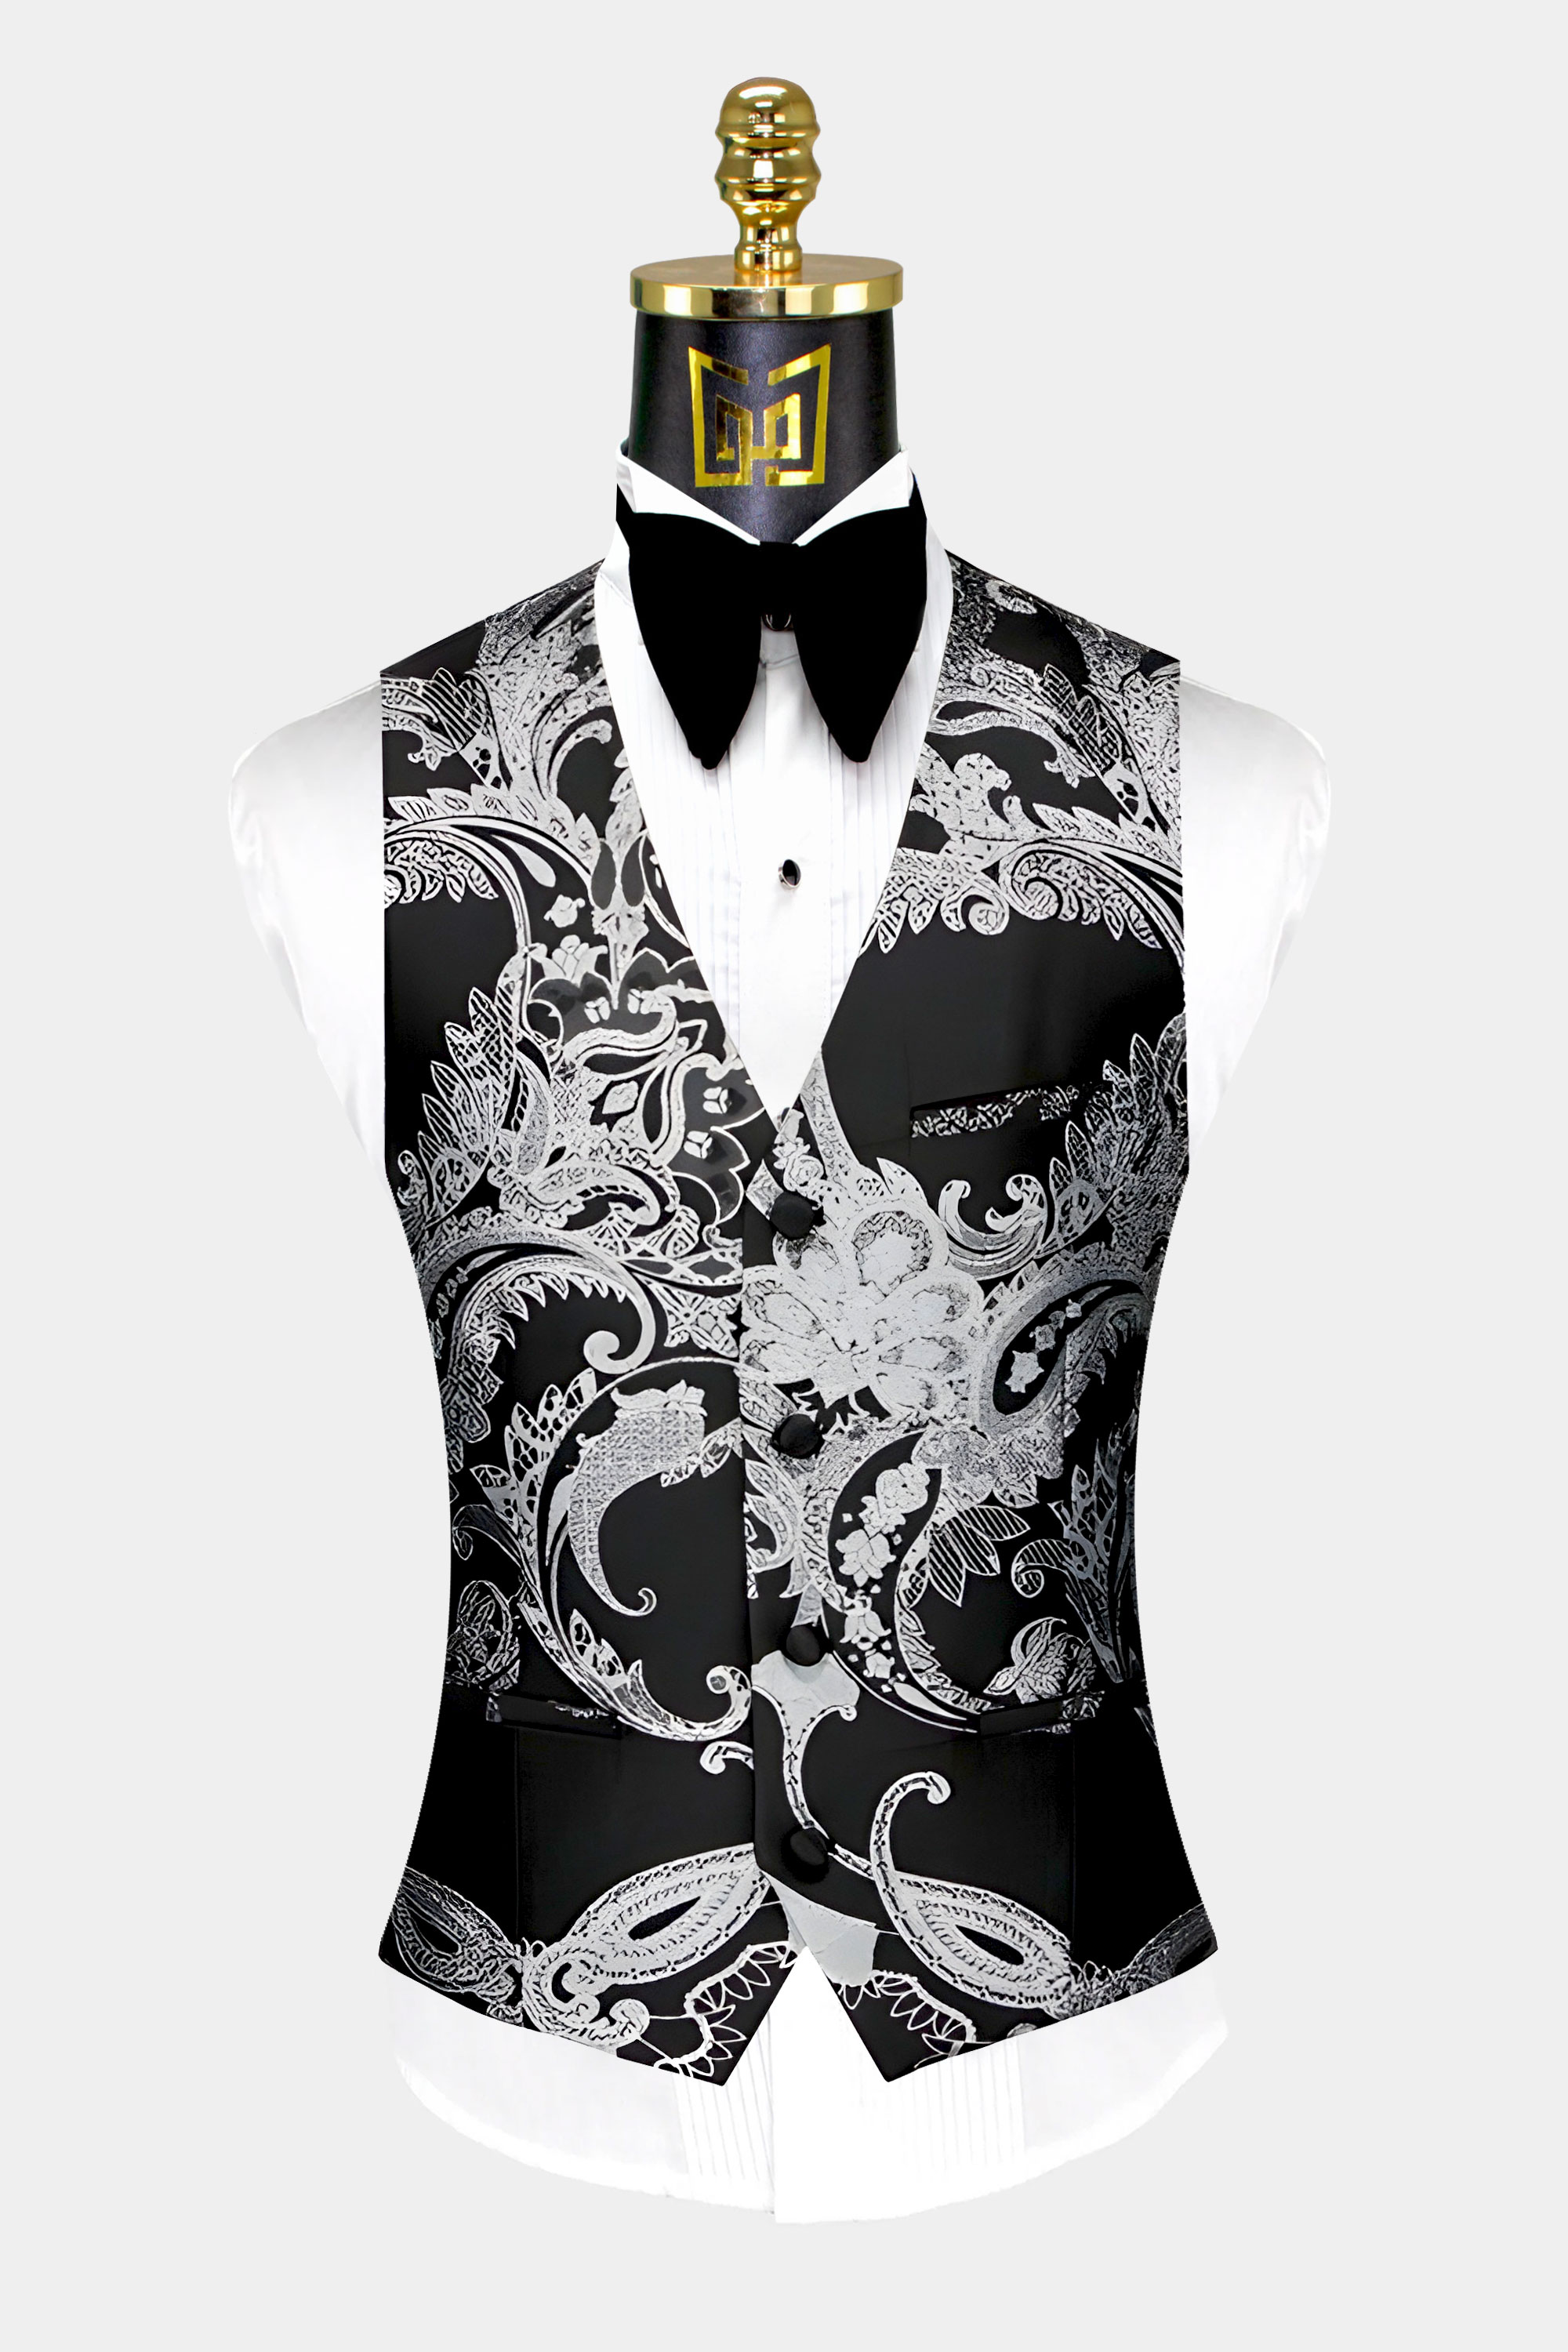 Black-and-Silver-Tuxedo-Vest-from-Gentlemansguru.com